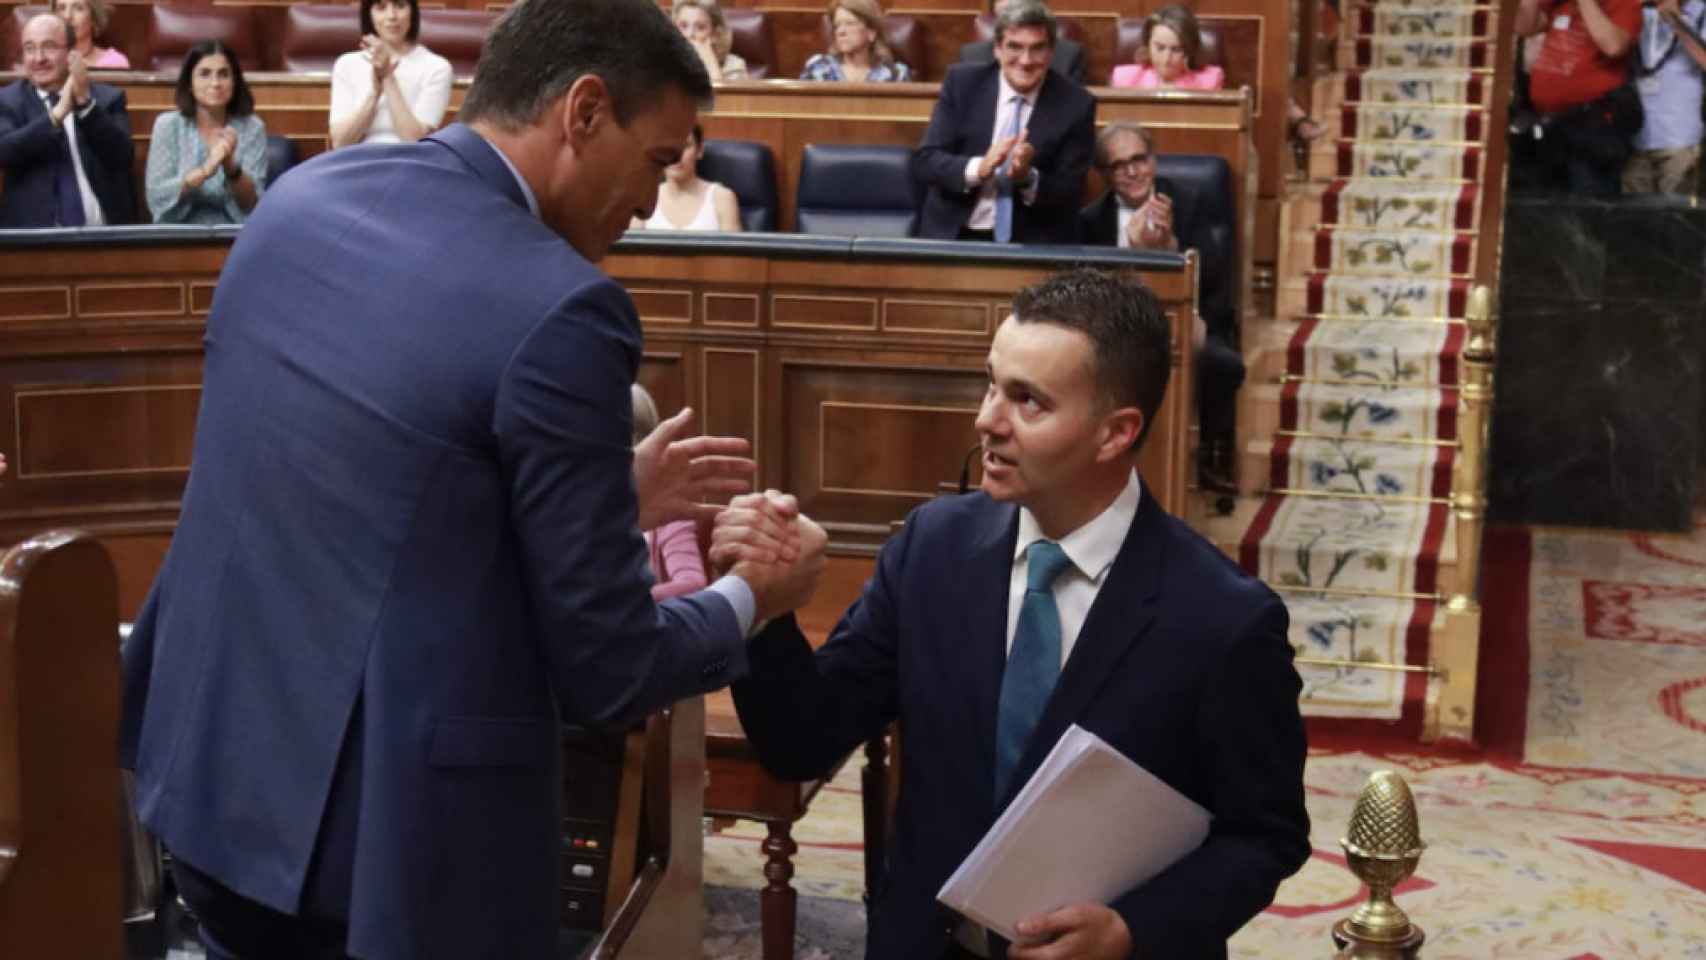 Pedro Sánchez estrecha la mano a Héctor Gómez tras intervenir éste en el Congreso cuando era portavoz parlamentario.